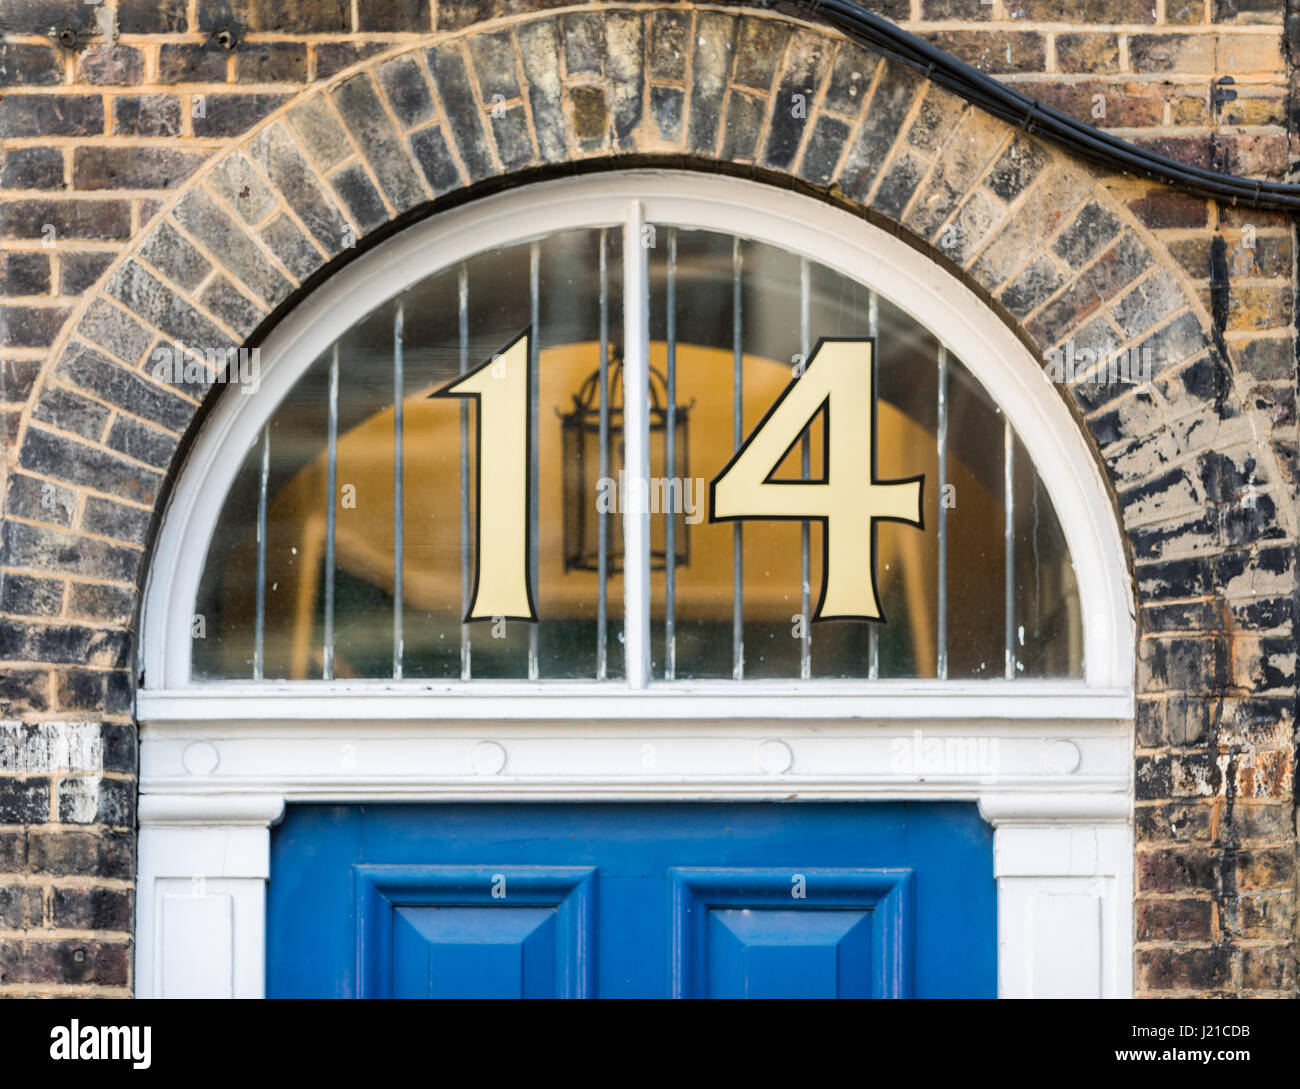 Une fenêtre en arc avec le numéro de rue 14 en or, London, England, UK Banque D'Images